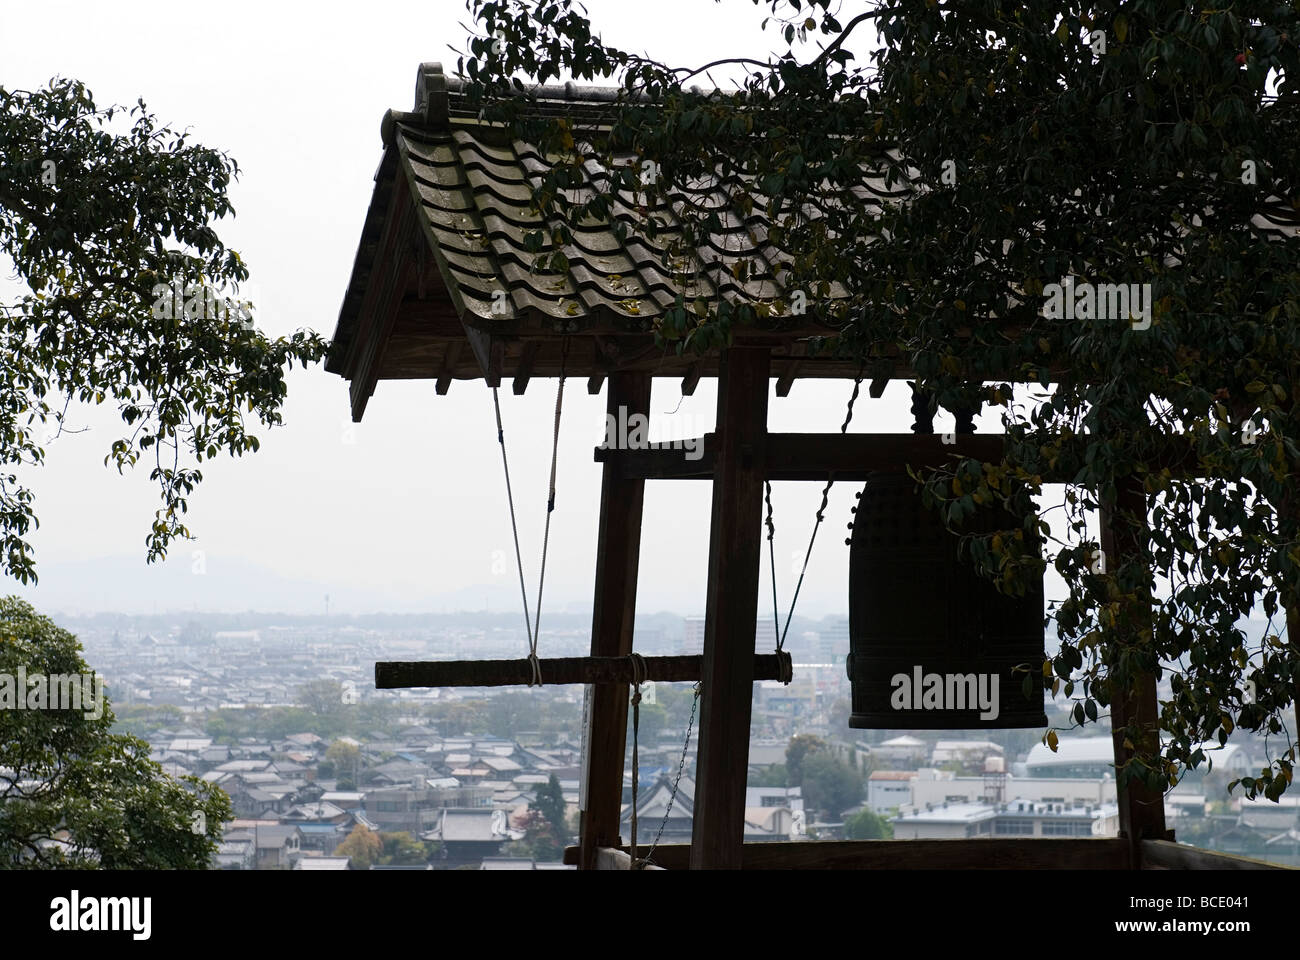 Una silhouette di un tempio giapponese campana al castello di Hikone con lo skyline della città e orizzonte in background Foto Stock